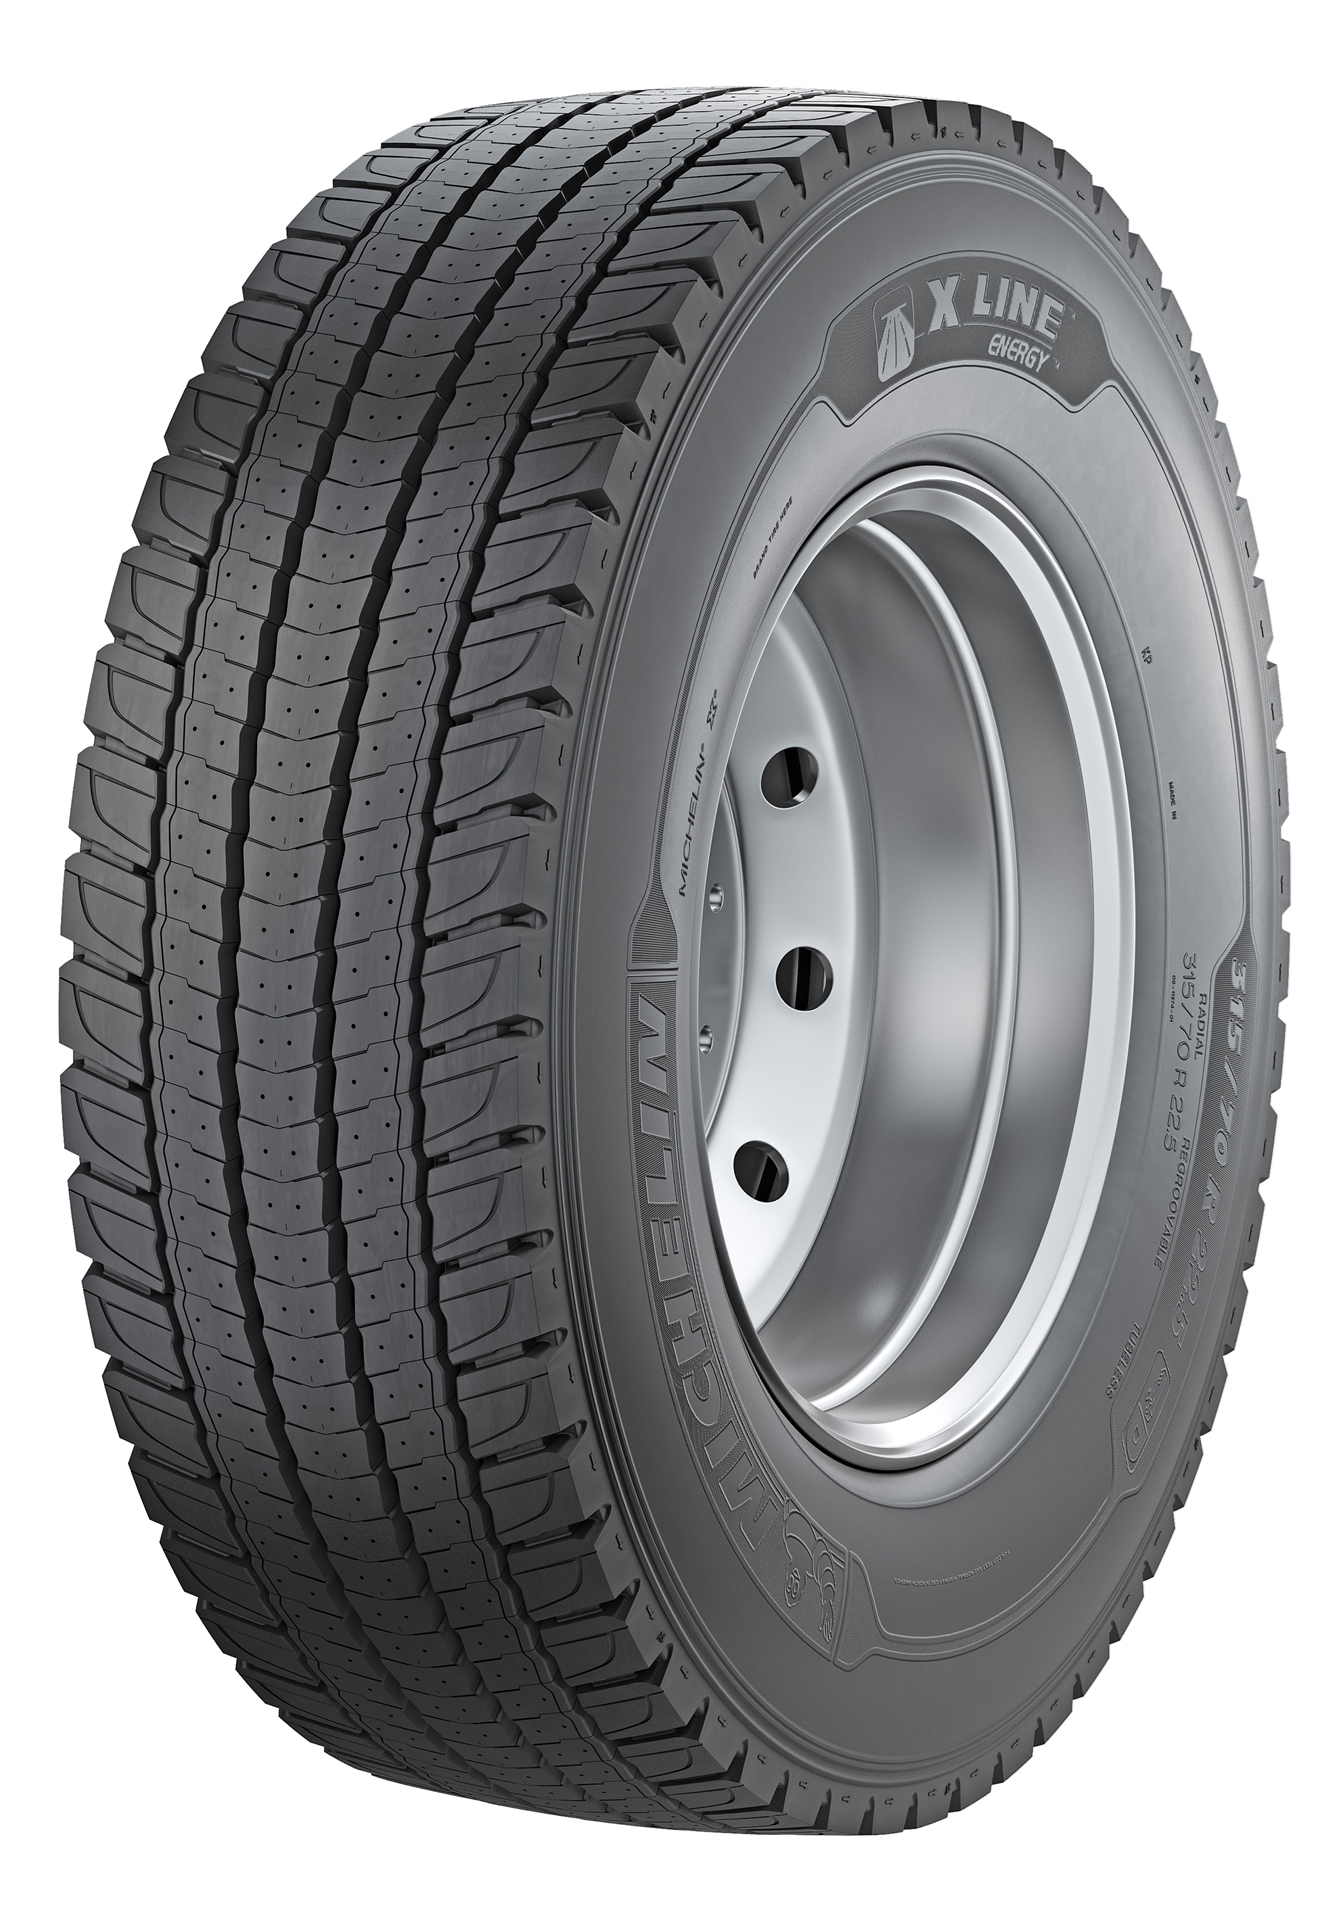 Gomme Nuove Michelin 315/80 R22.5 156/150L X LINE EN.D M+S (8.00mm) pneumatici nuovi Estivo